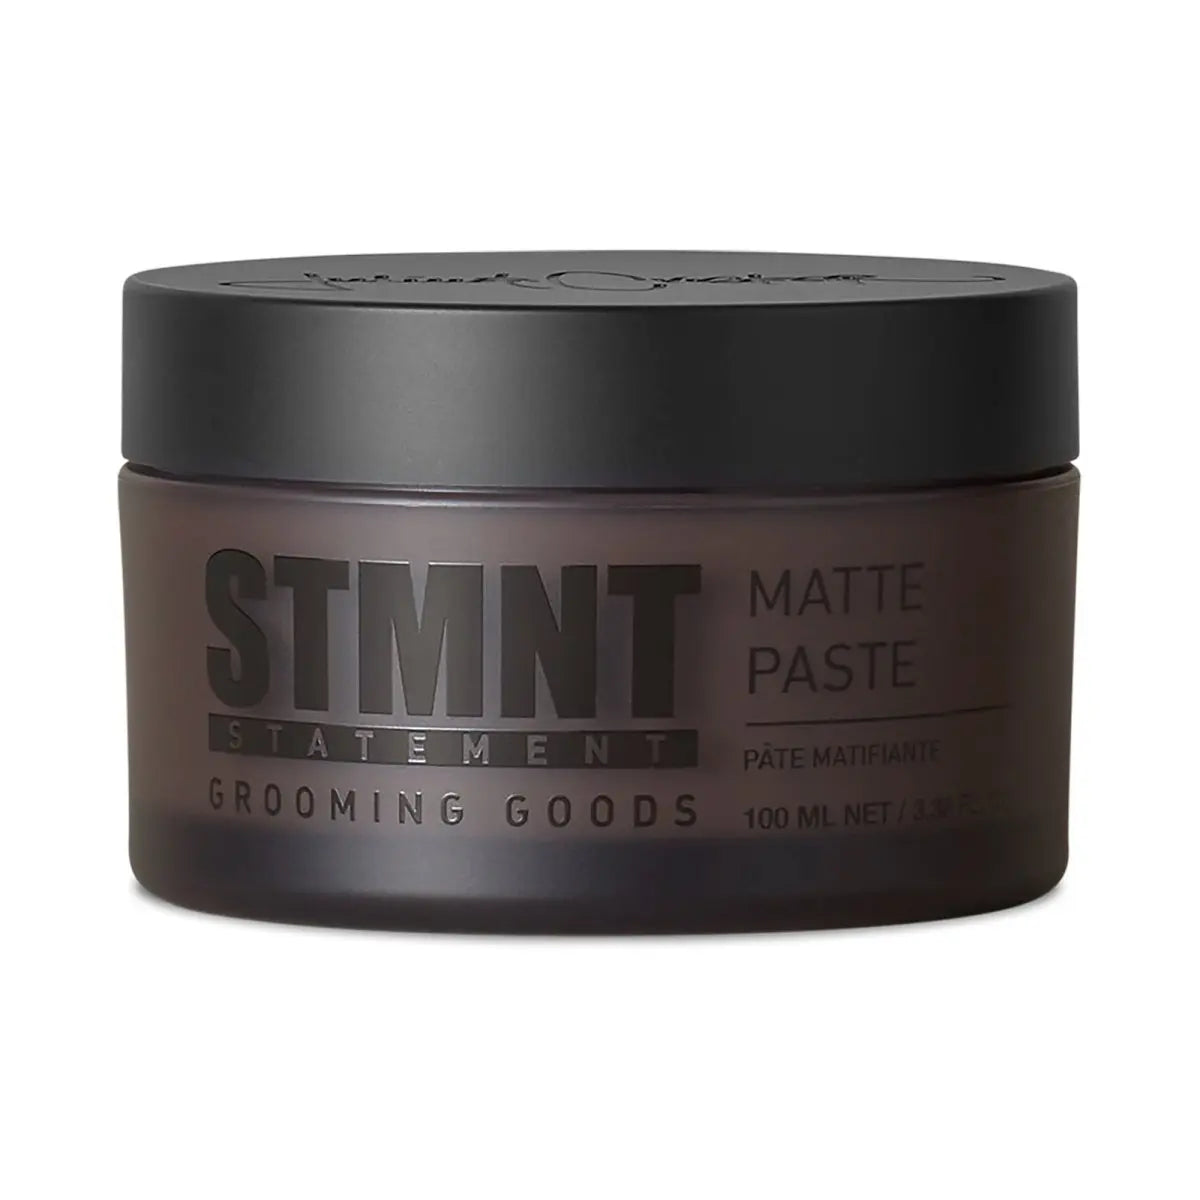 STMNT Matte Paste - Pasta utrwalająca o matowym wykończeniu